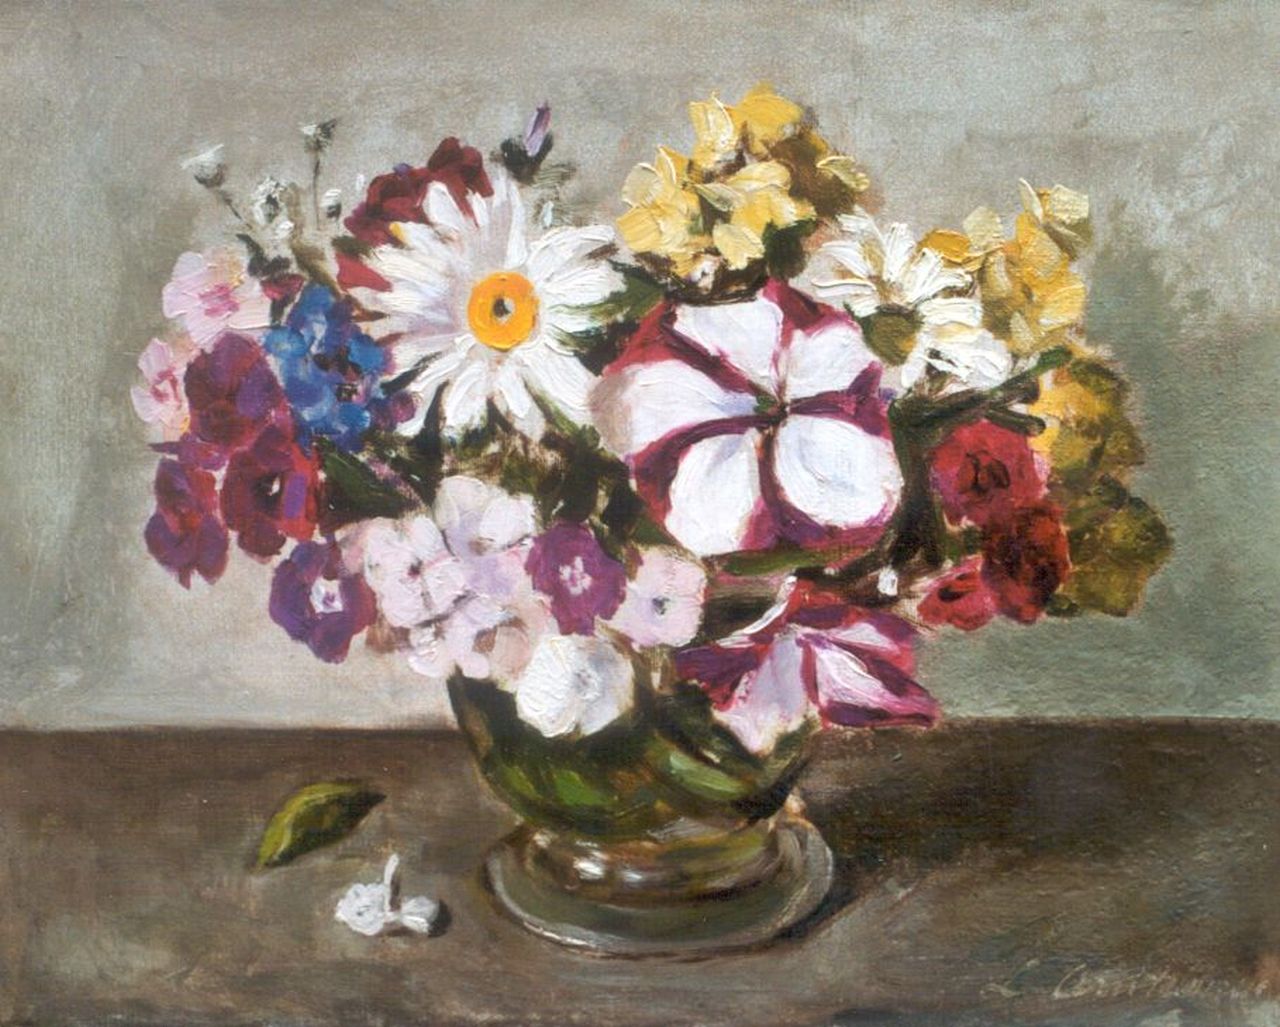 Arntzenius A.M.M.  | Alide Margaretha Maria 'Liekie' Arntzenius, A colorful bouquet, Öl auf Leinwand 23,8 x 30,2 cm, signed l.r.